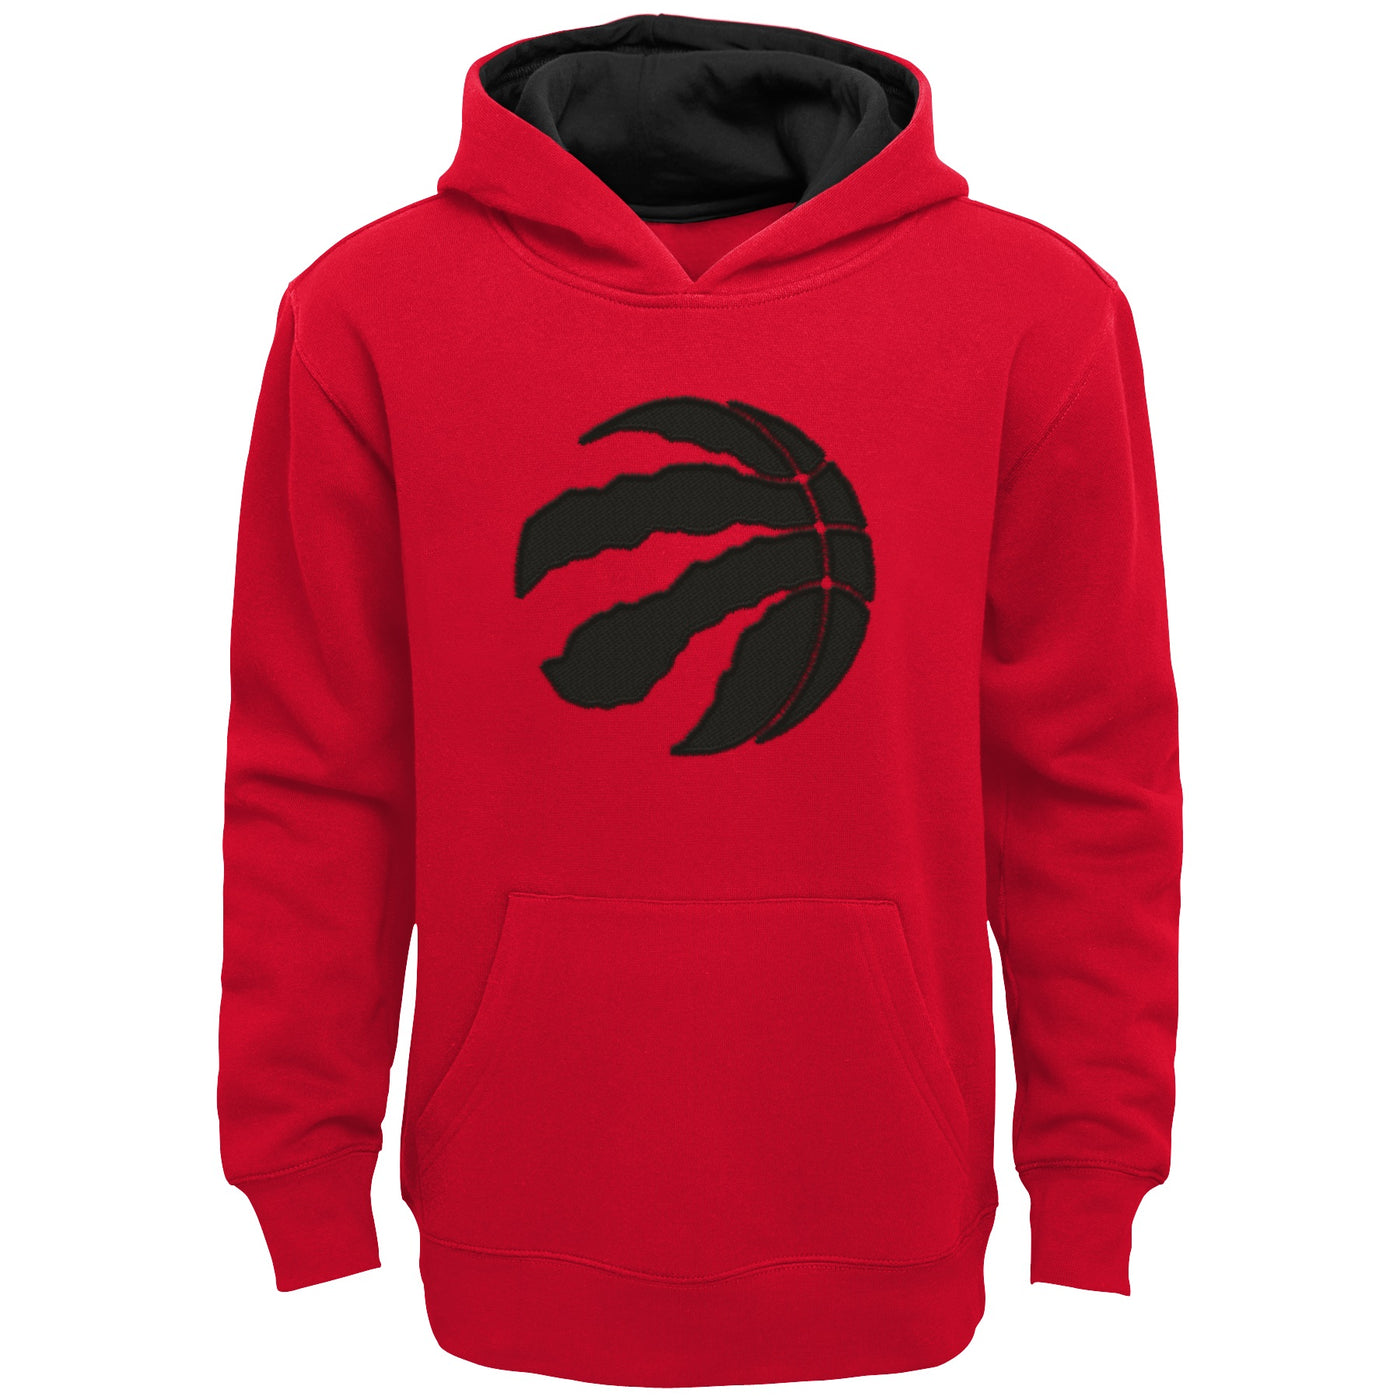 Toronto Raptors Sweatshirts in Toronto Raptors Team Shop 